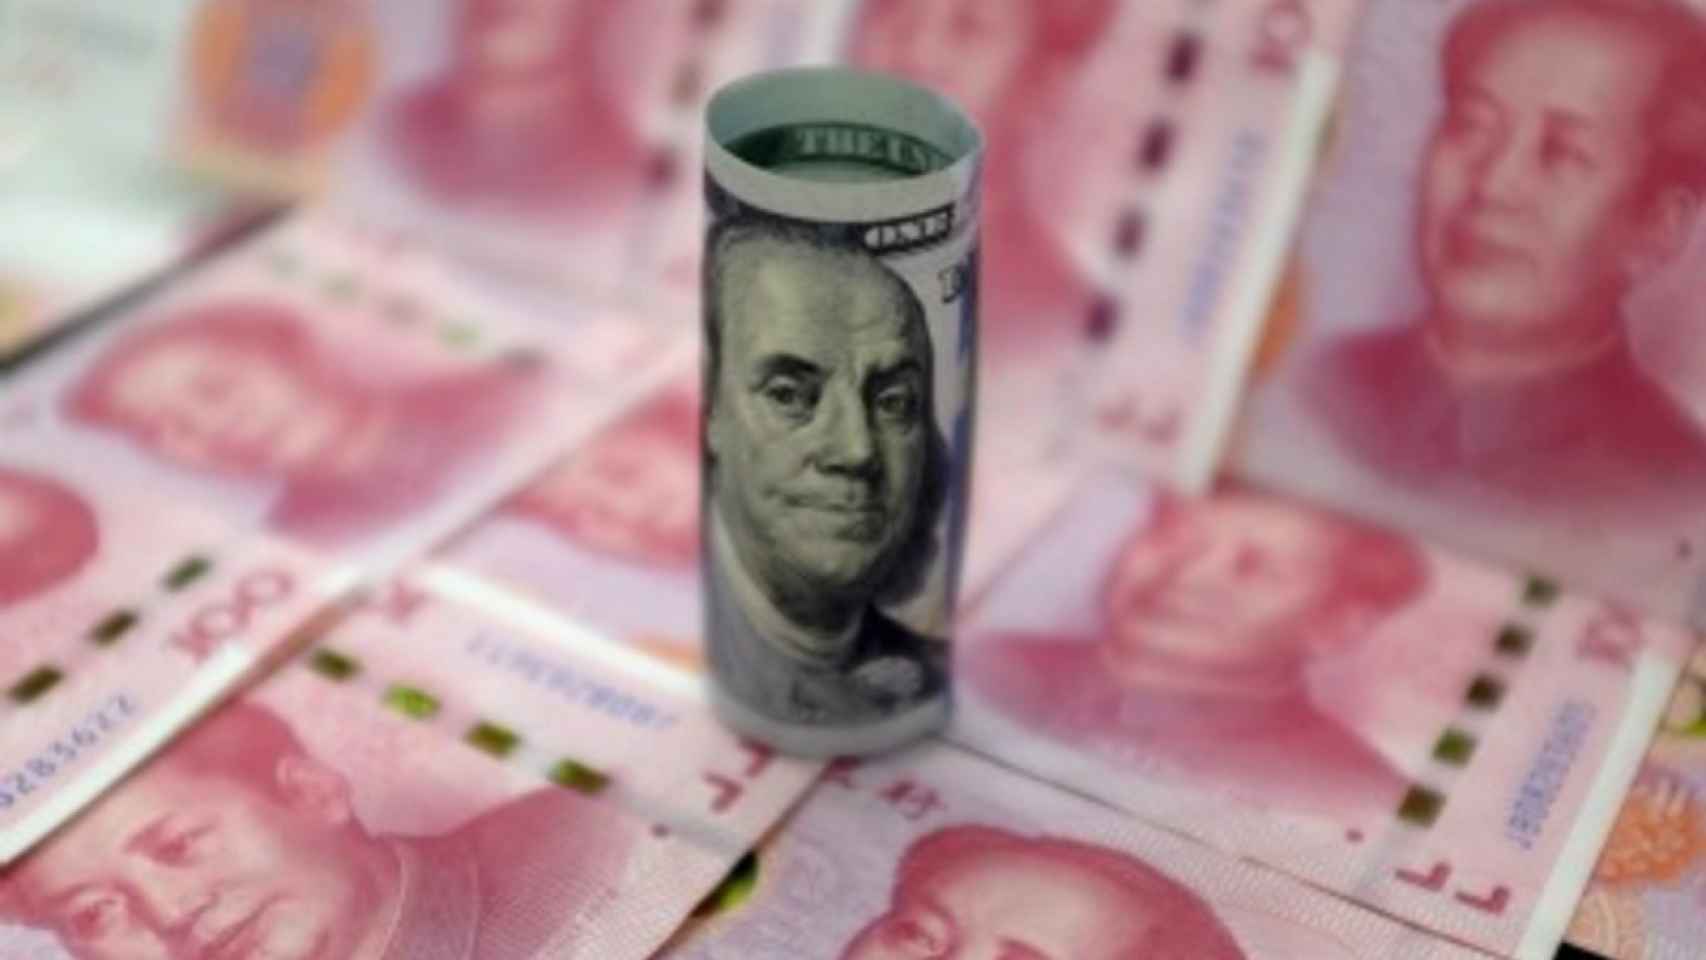 El dólar encadena seis semanas alcistas consecutivas contra el yuan chino